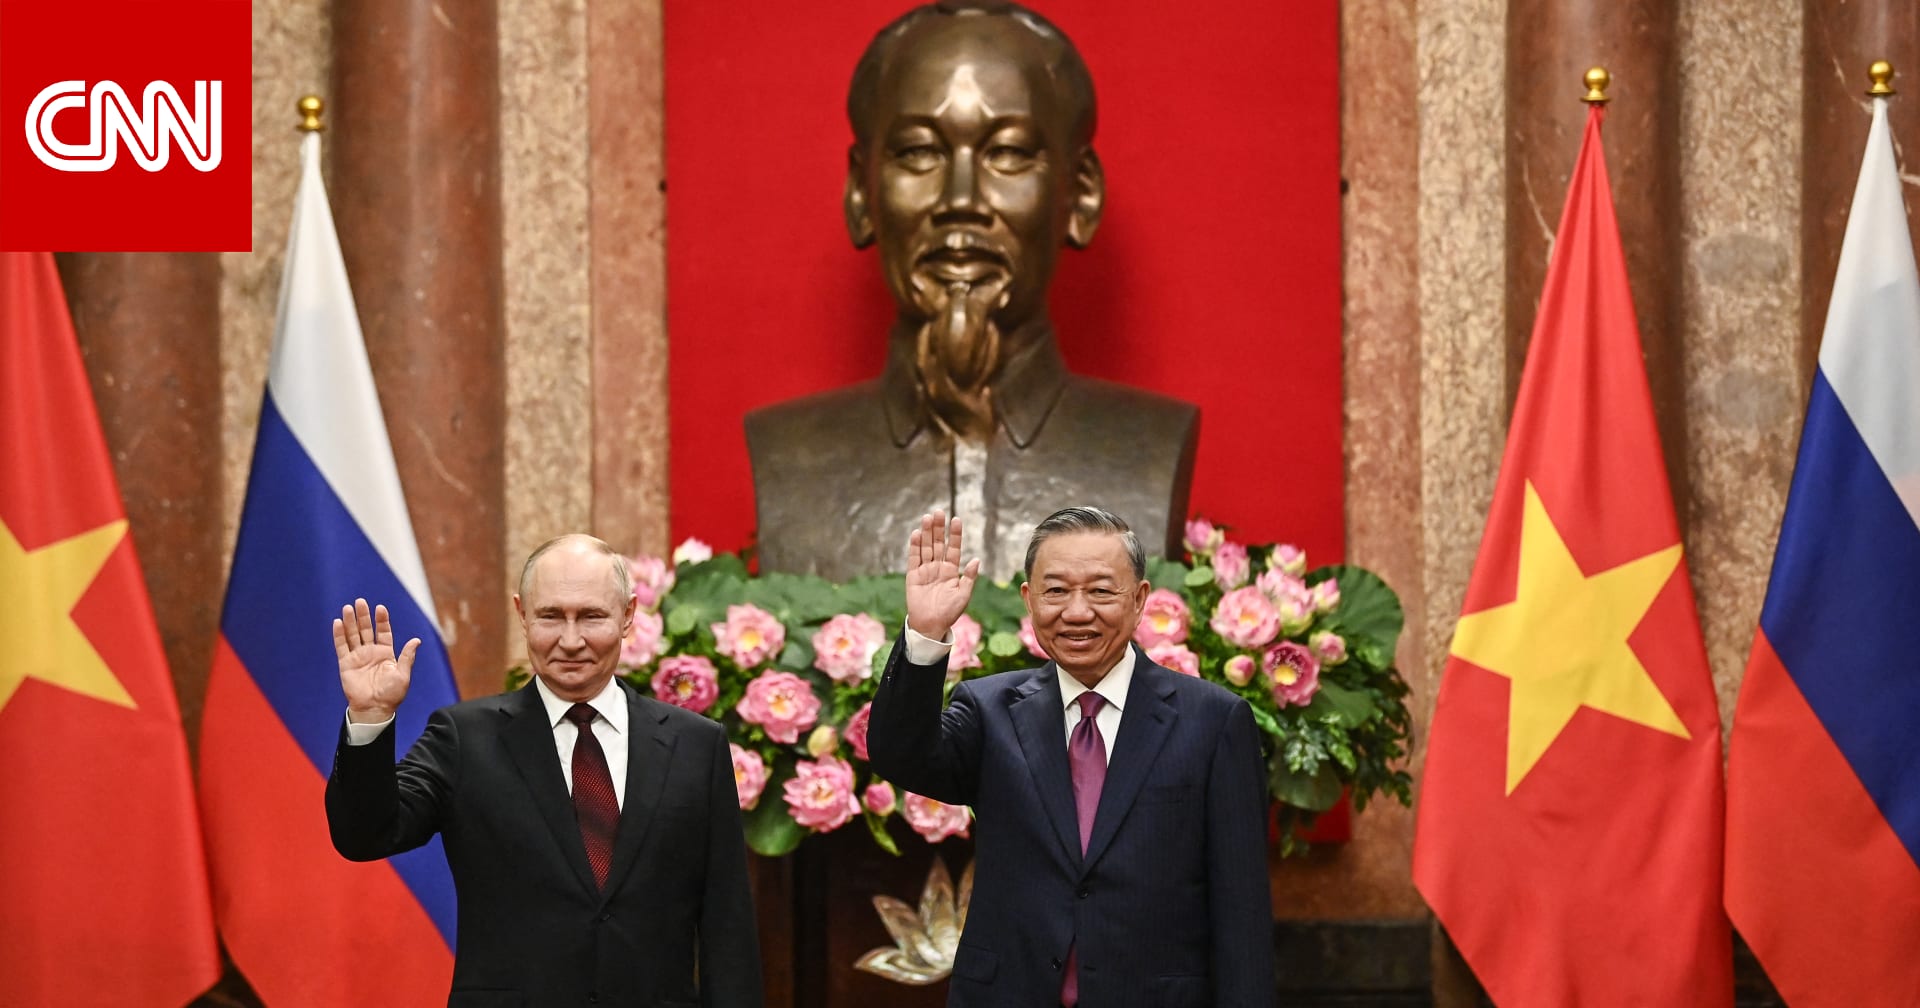 بوتين في فيتنام بعد كوريا الشمالية وسفير أمريكا بهانوي يعلق